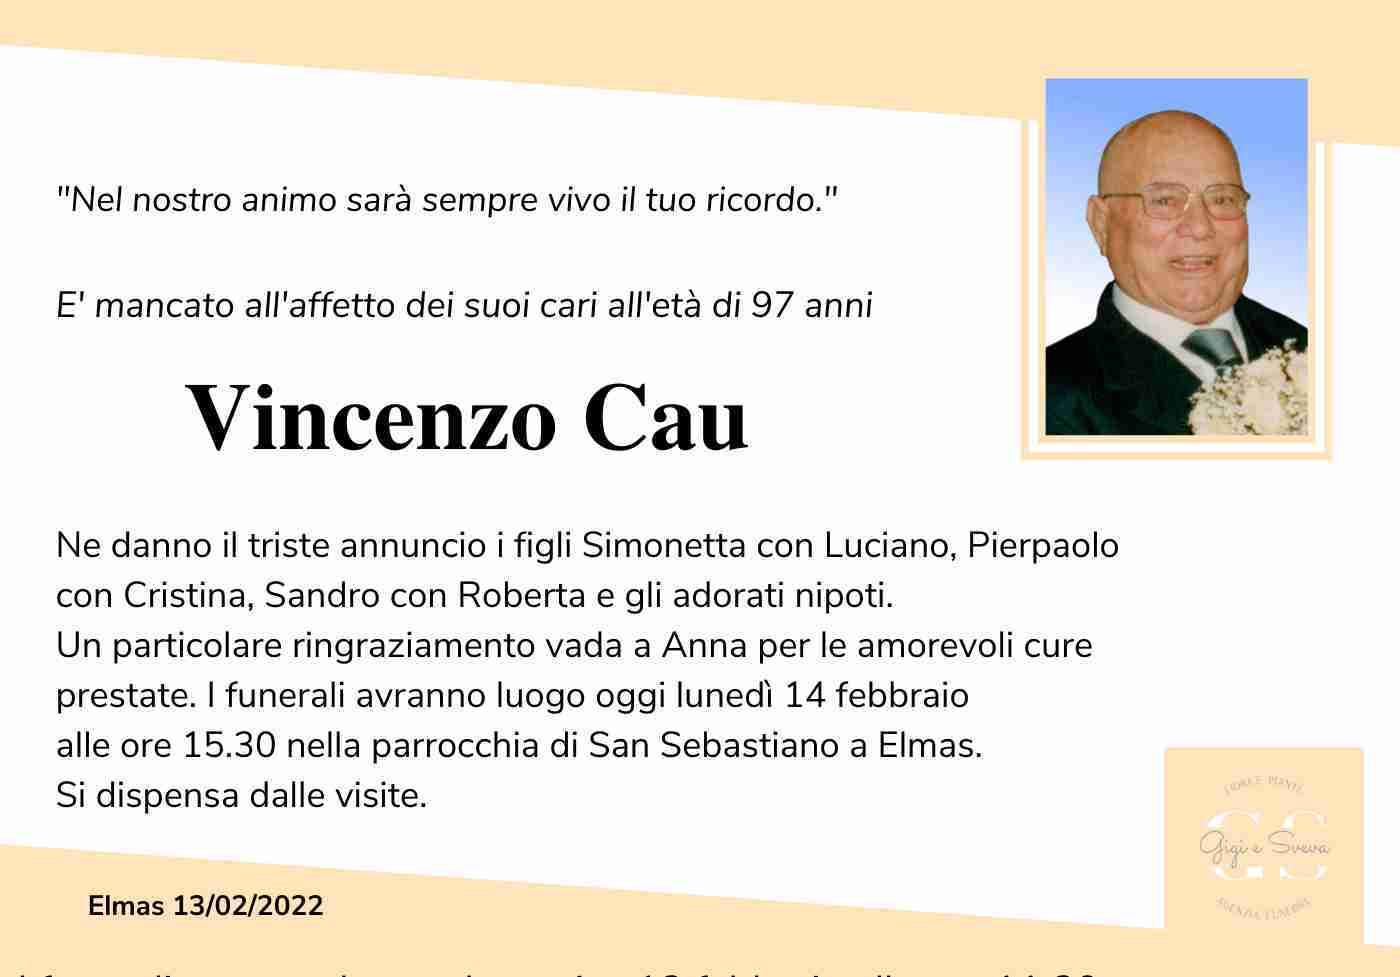 Vincenzo Cau